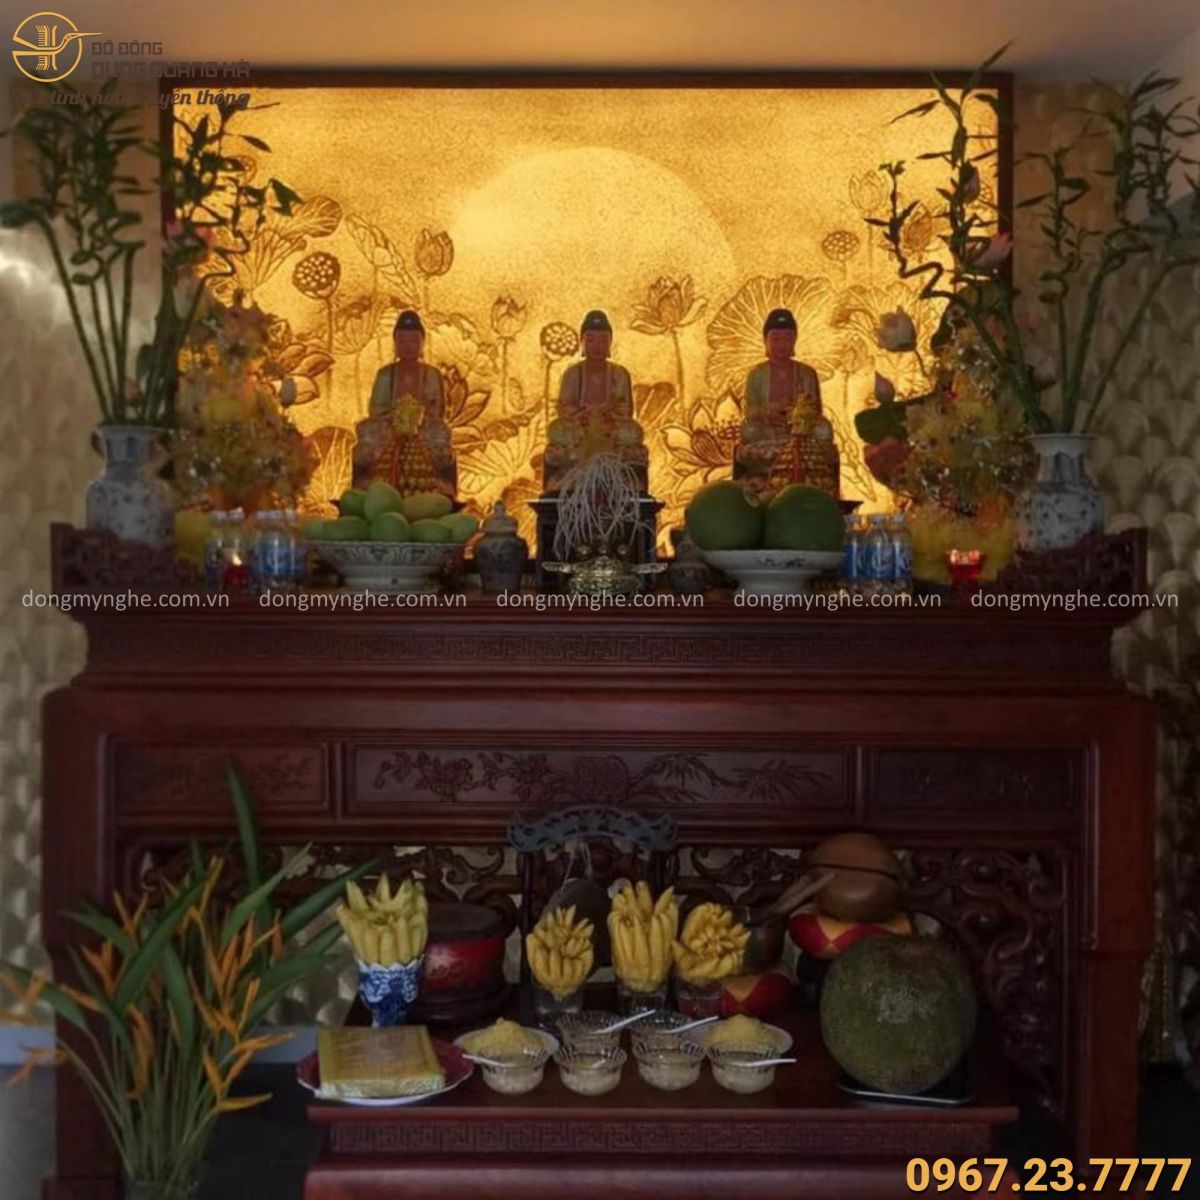 Việc cúng bái Phật tại nhà là cách để tôn vinh và tri ân đức bổn sư, tạo ra một không gian yên bình và tinh thần trong gia đình. Tuy nhiên, năm 2024, hãy nhớ áp dụng phương pháp cúng bái Phật tại nhà chuẩn nhất để hưởng lợi nhiều nhất và tránh hối tiếc sau này.